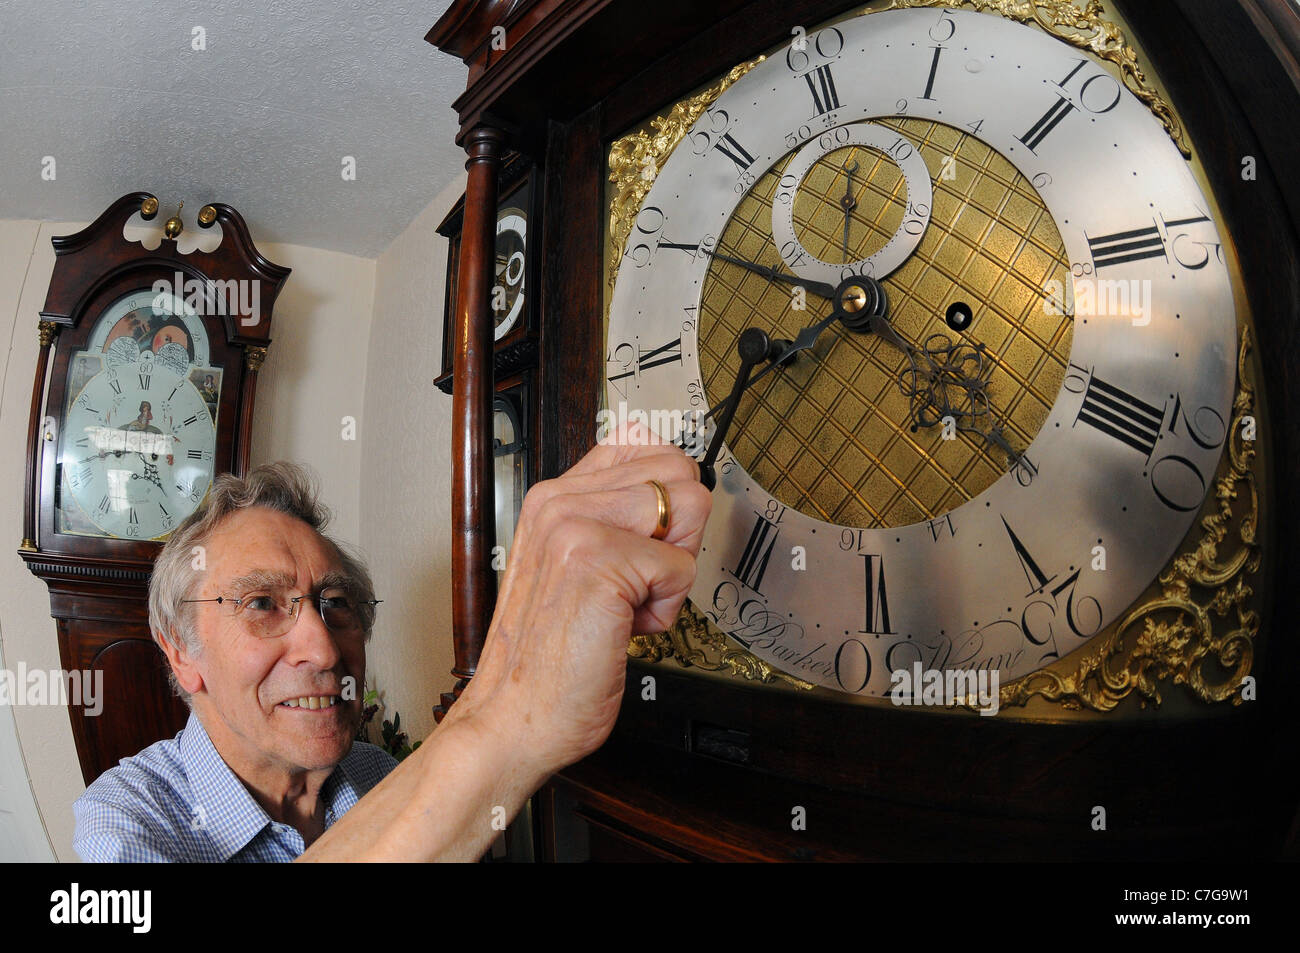 Un hombre ajustar la hora en un reloj antiguo. Foto de stock